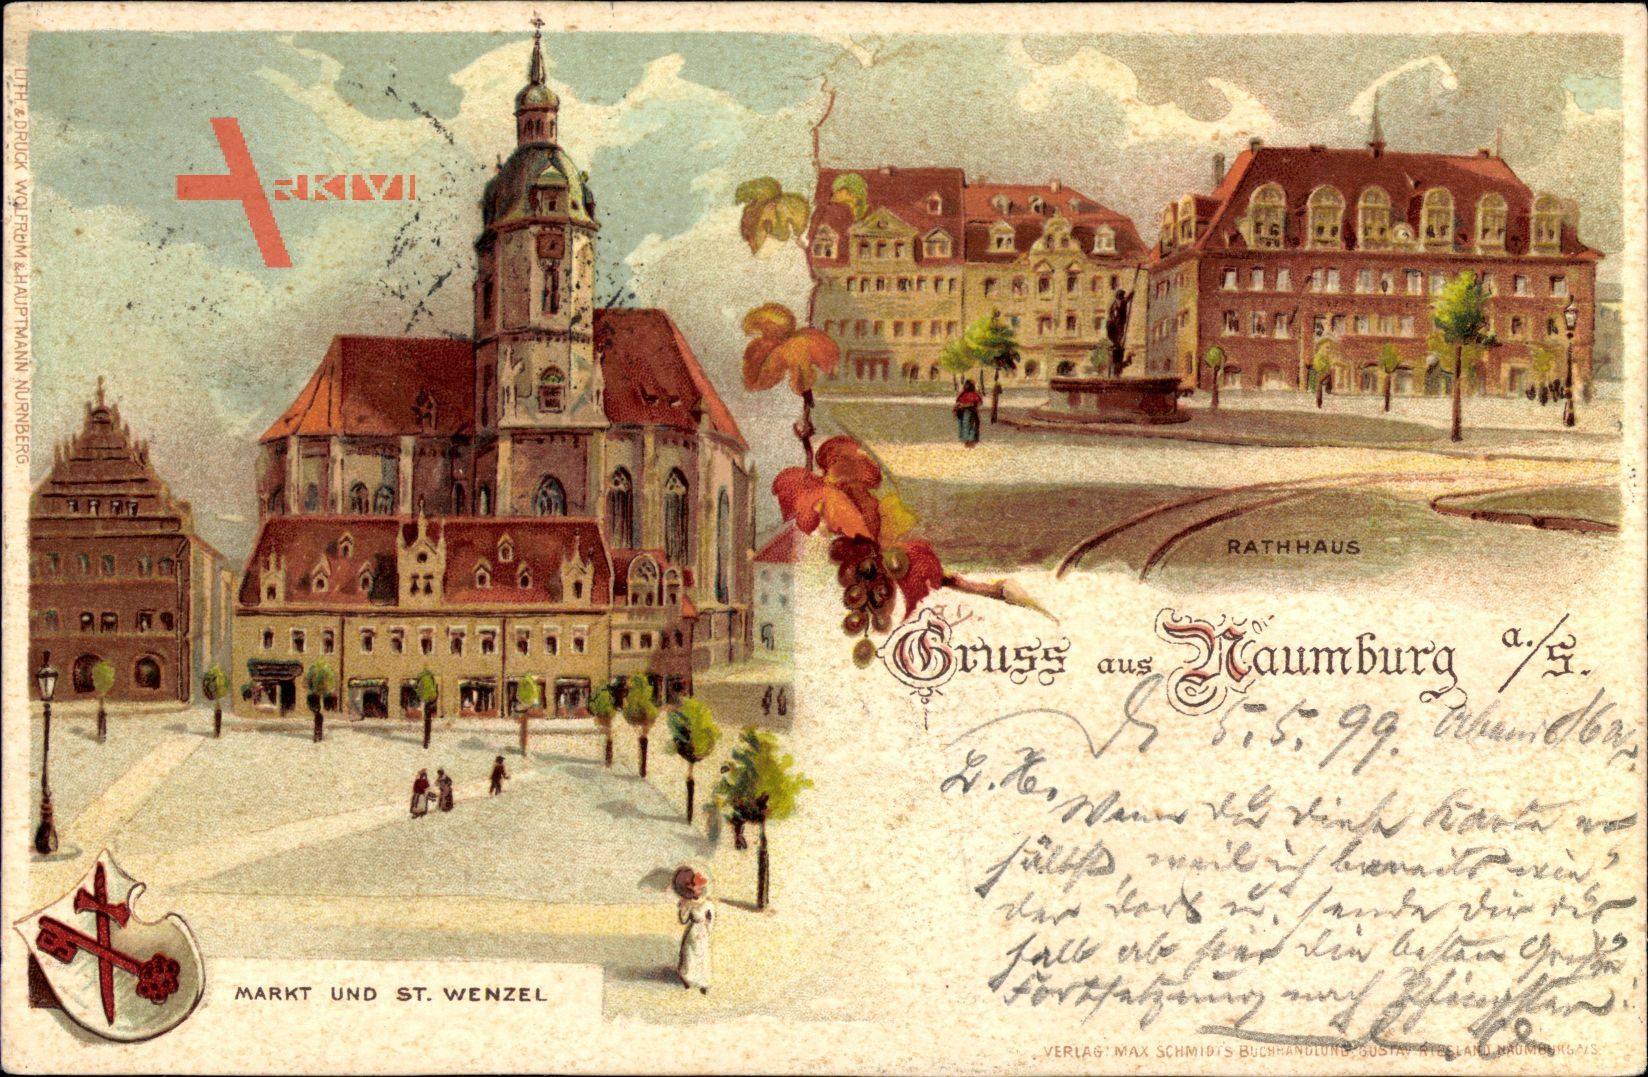 Wappen Naumburg an der Saale, Rathaus, Markt und St. Wenzel, Straßenpartie